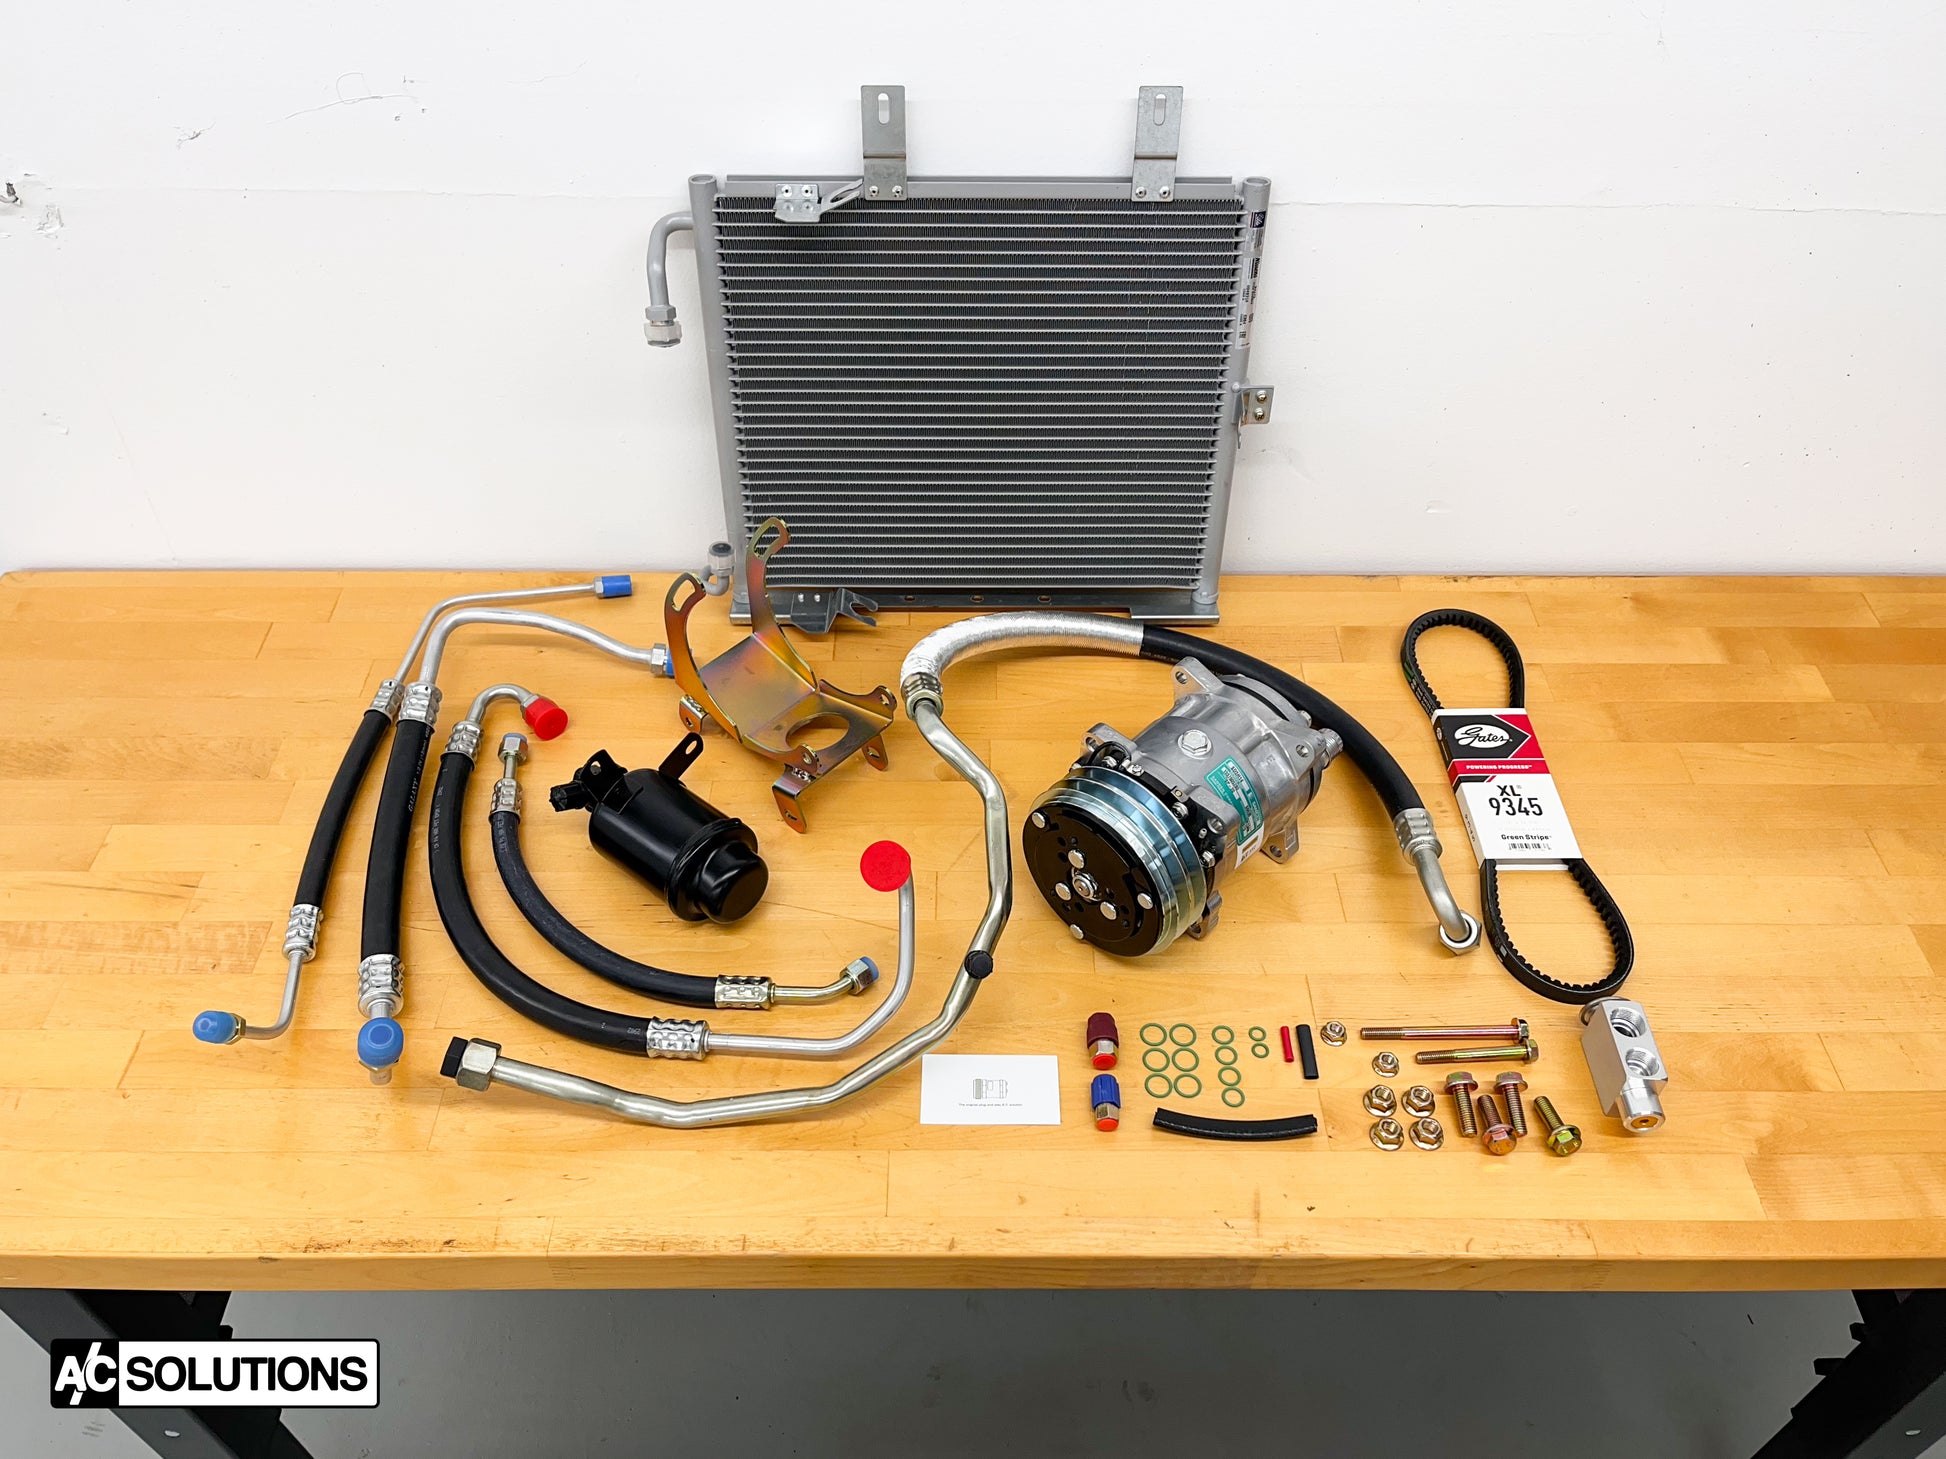 BMW E30 Sanden Conversion Kit – A/C Solutions